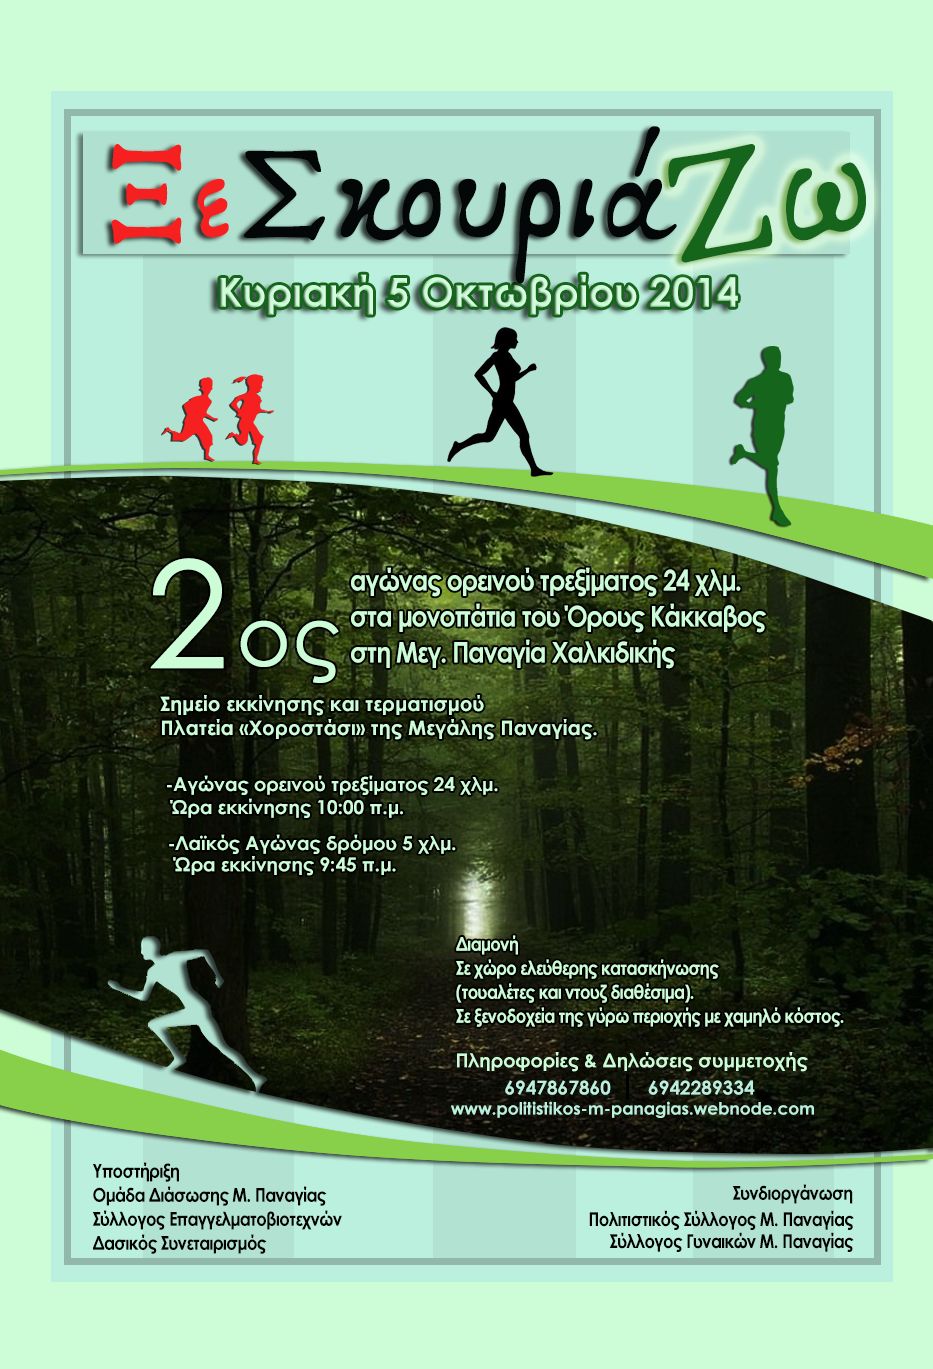 Ξε Σκουριά Ζω: 2ος αγώνας ορεινού τρεξίματος στα μονοπάτια του Όρους Κάκκαβος